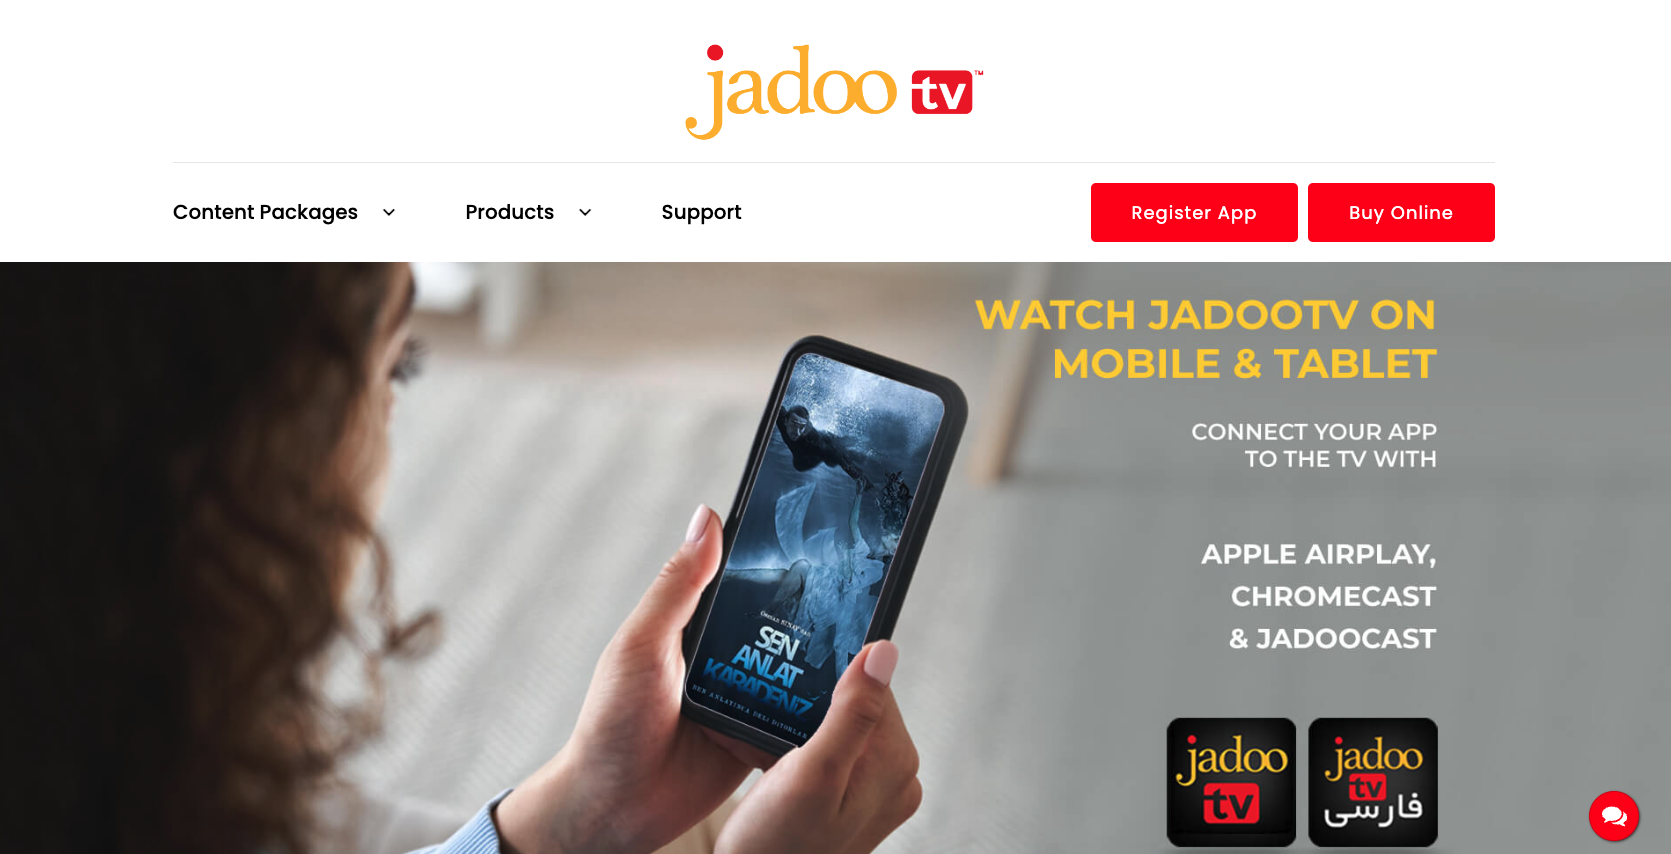 jadoo tv website